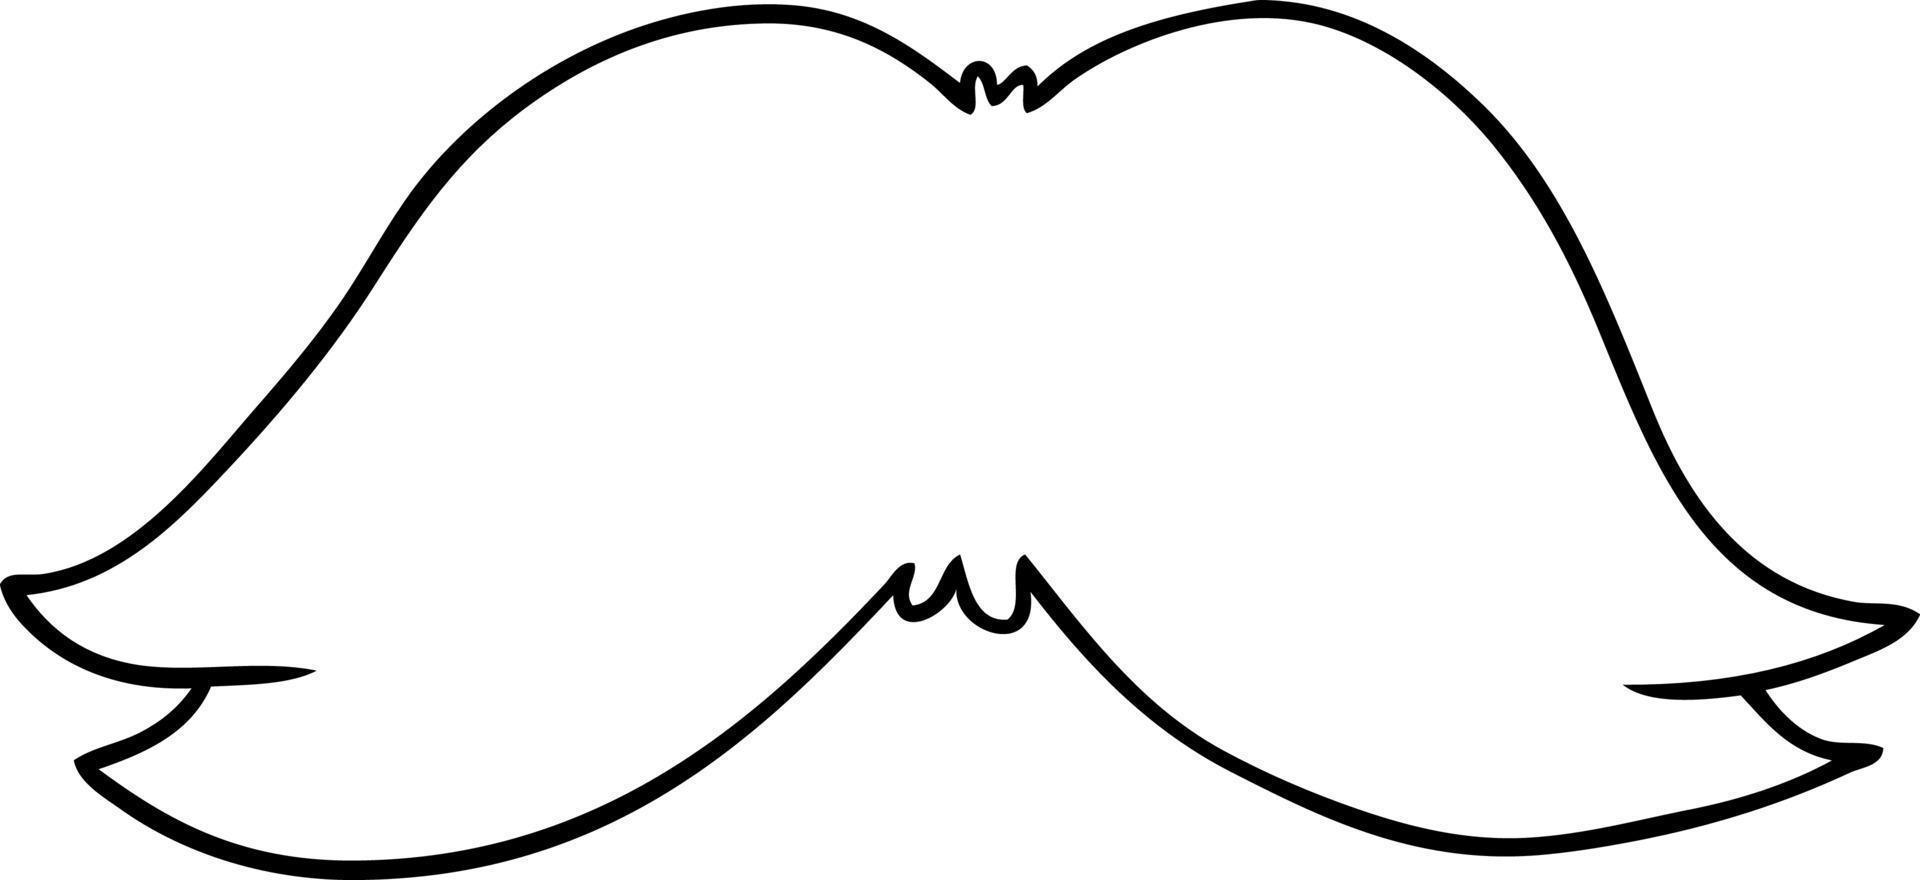 Strichzeichnung Doodle des Schnurrbarts eines Mannes vektor